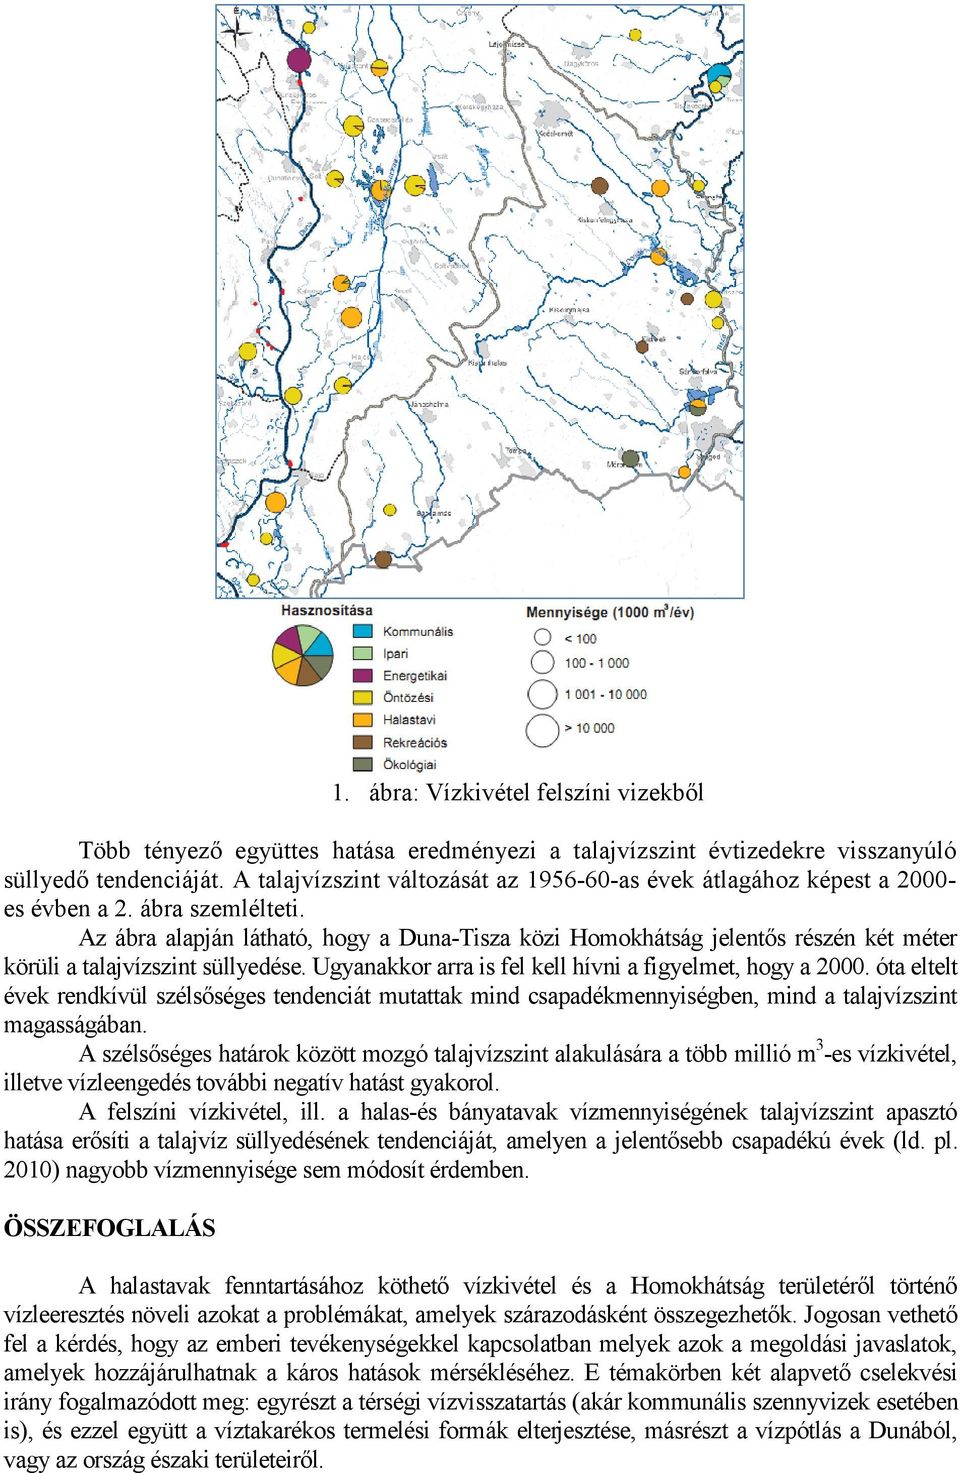 Az ábra alapján látható, hogy a Duna-Tisza közi Homokhátság jelentős részén két méter körüli a talajvízszint süllyedése. Ugyanakkor arra is fel kell hívni a figyelmet, hogy a 2000.